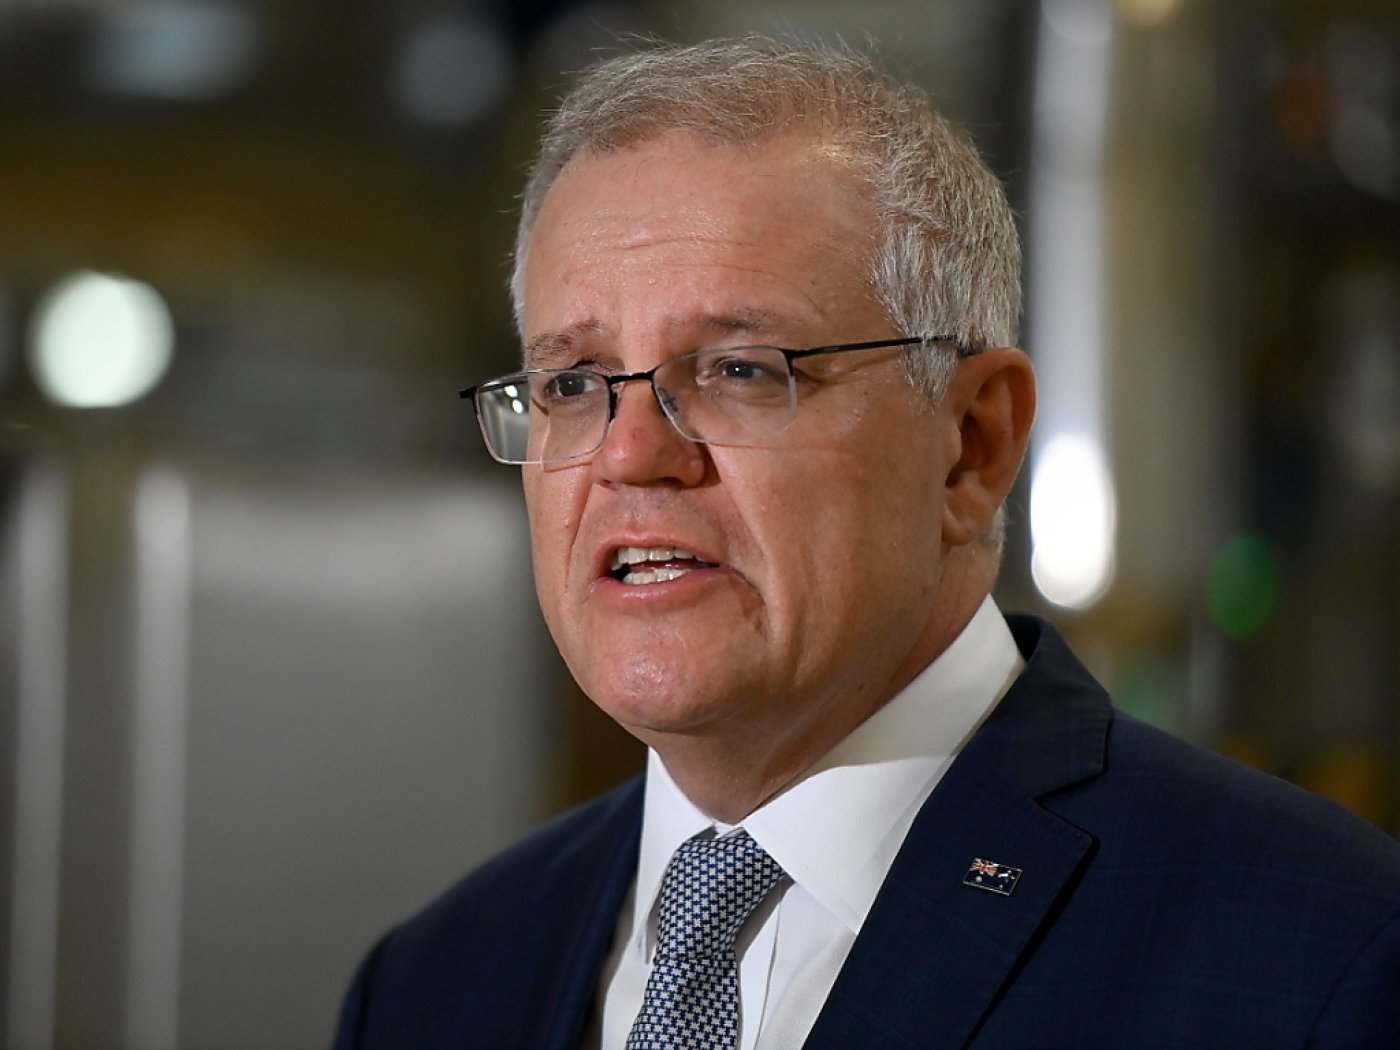 "L'Australie ne reviendra pas sur la position ferme qu'elle a adoptée pour défendre ses intérêts", a souligné le Premier ministre Scott Morrison en annonçant que son pays n'enverrait pas de représentant diplomatique aux JO de Pékin (archives).